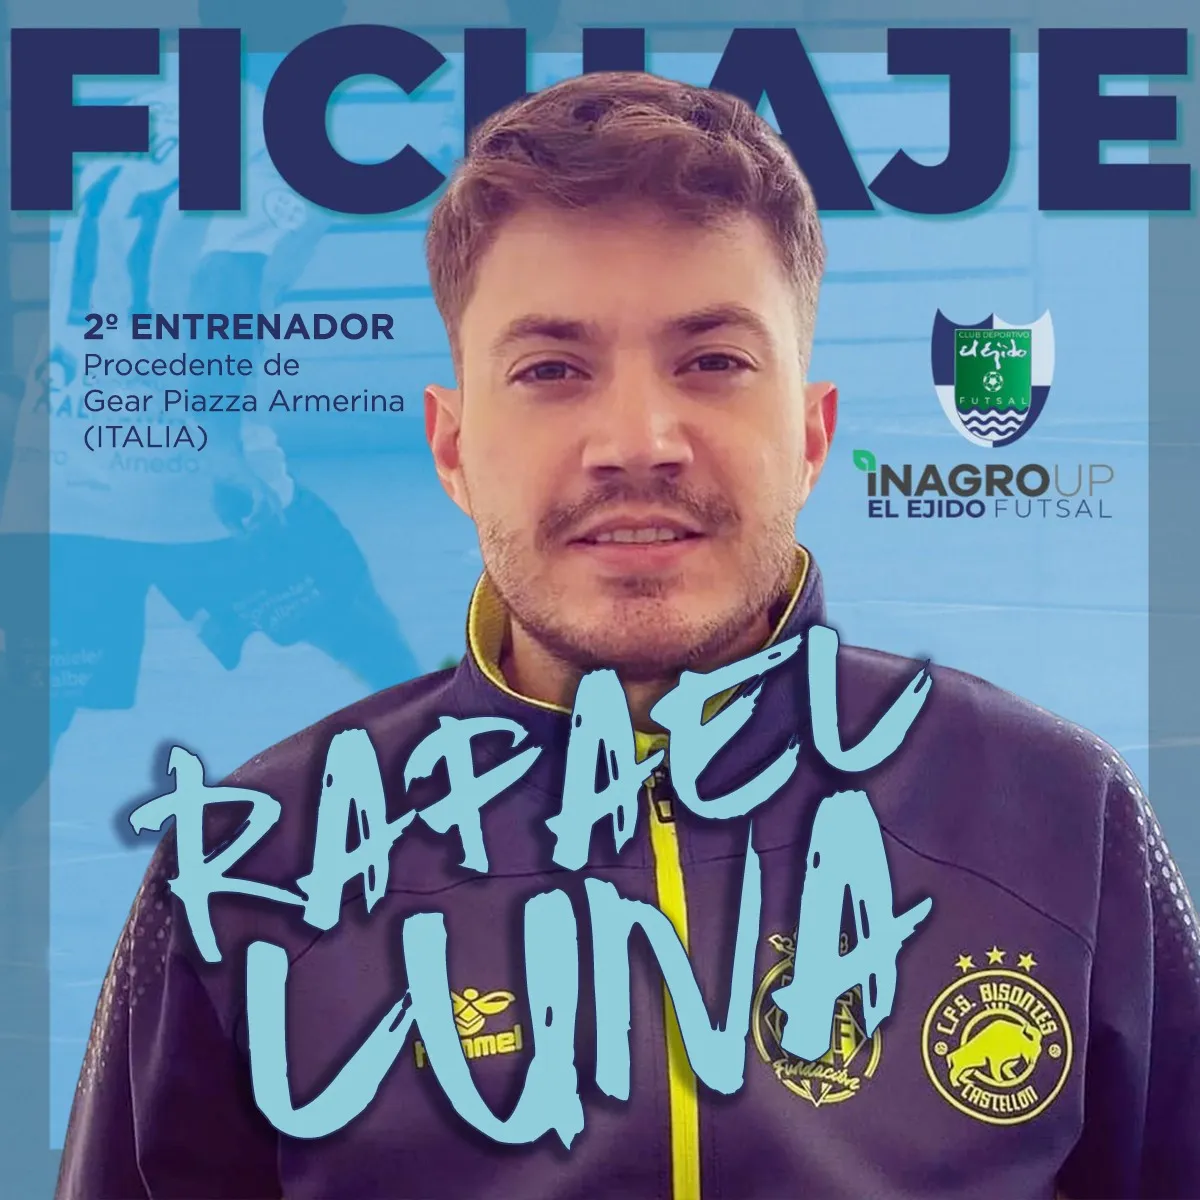 Rafael Luna, nuevo segundo entrenador de Inagroup El Ejido Futsal